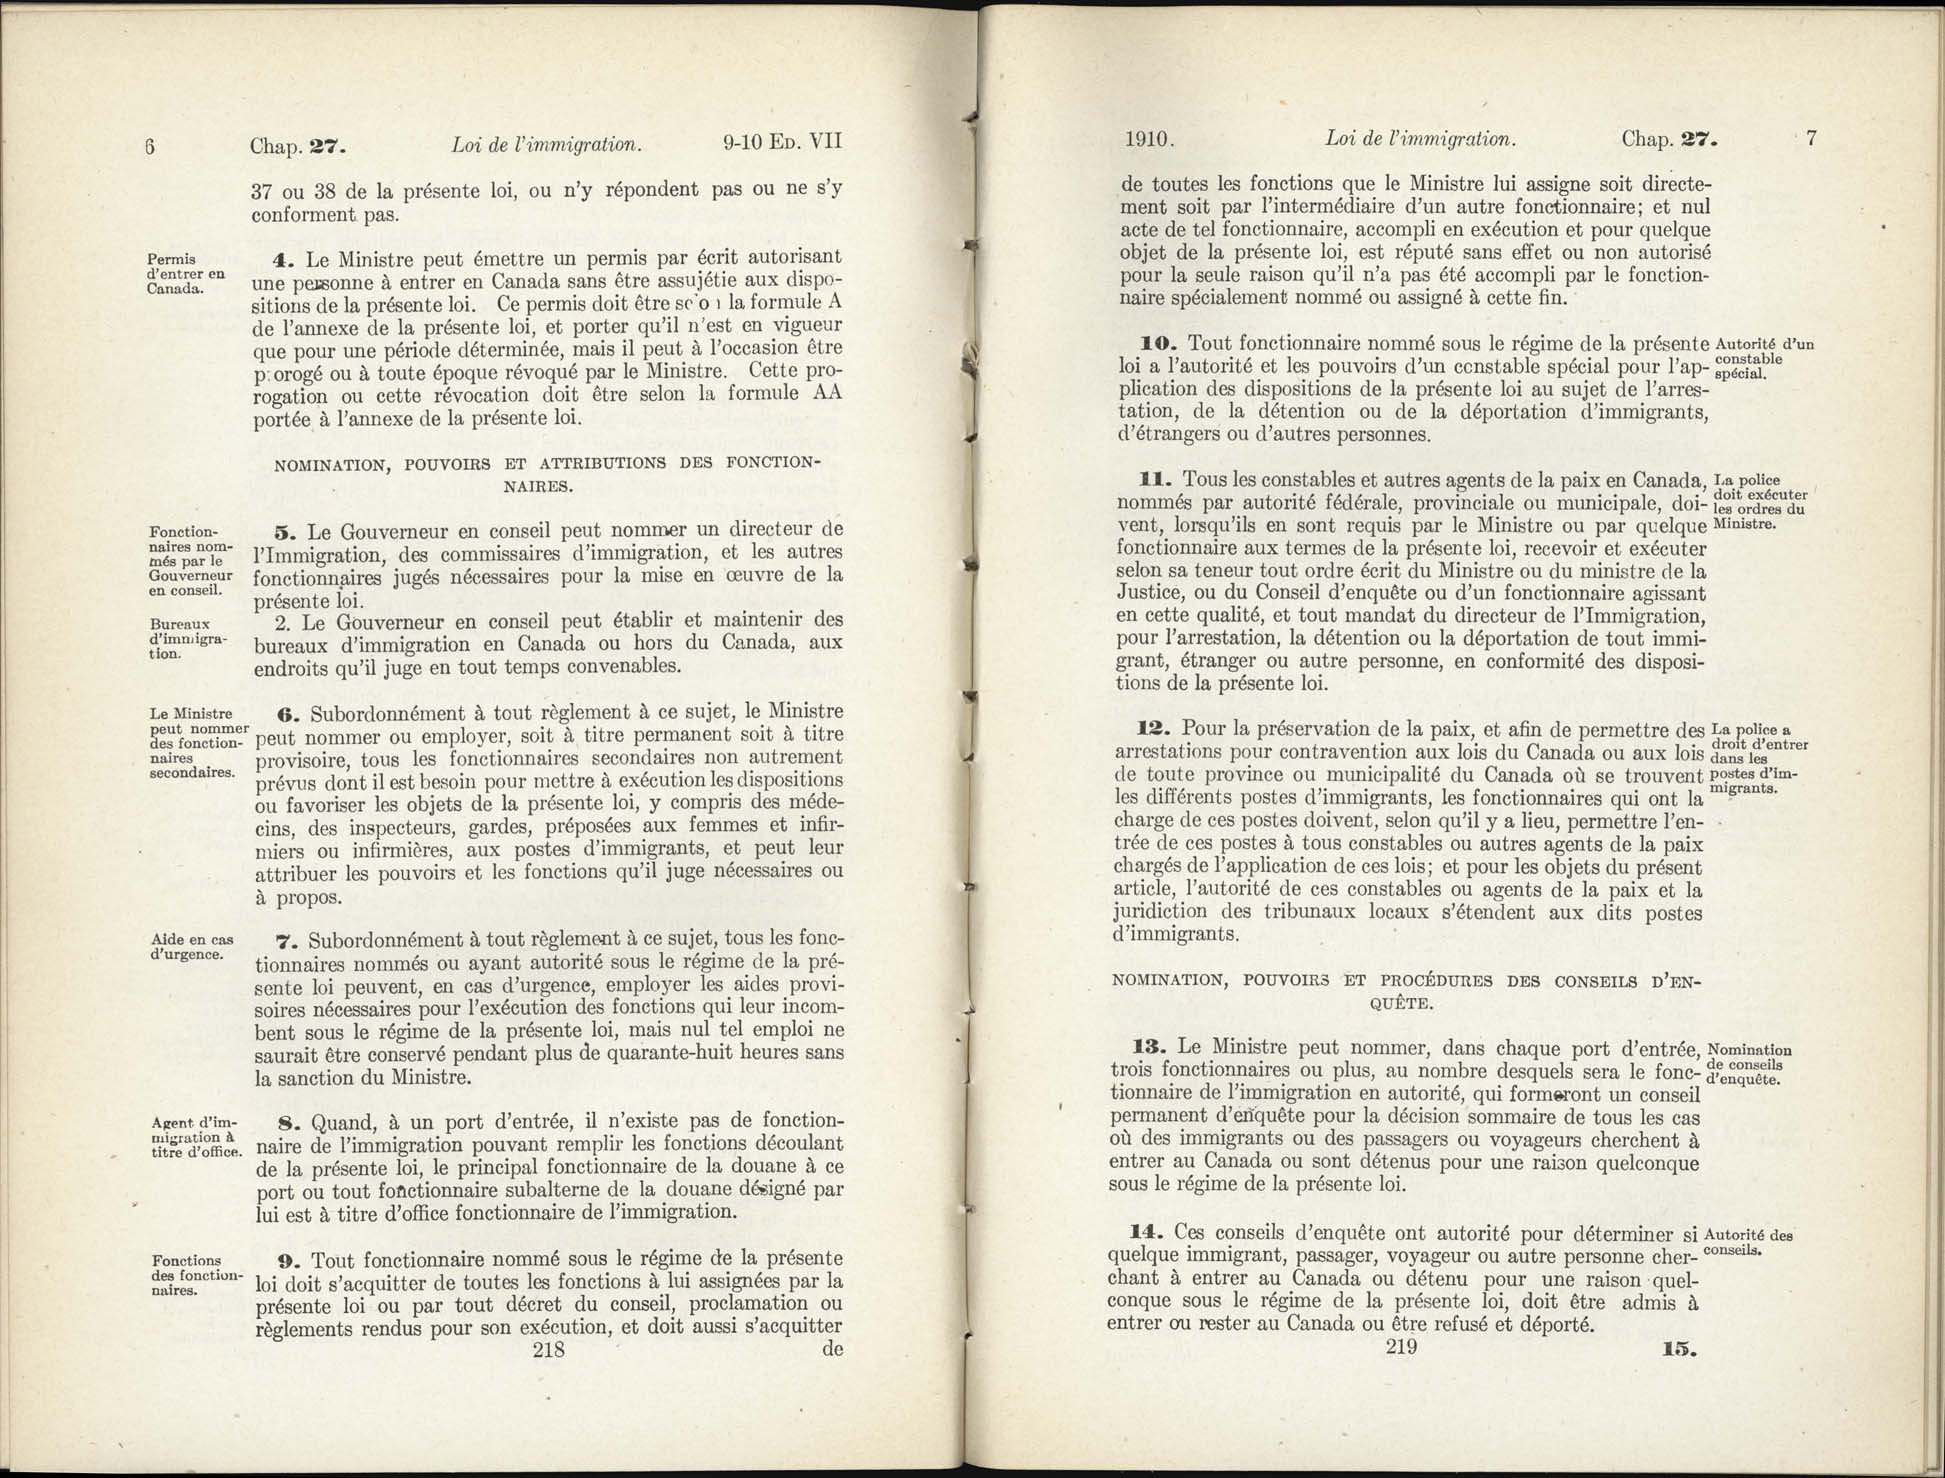 Chap 27 Page 218, 219 L’Acte d’immigration, 1910